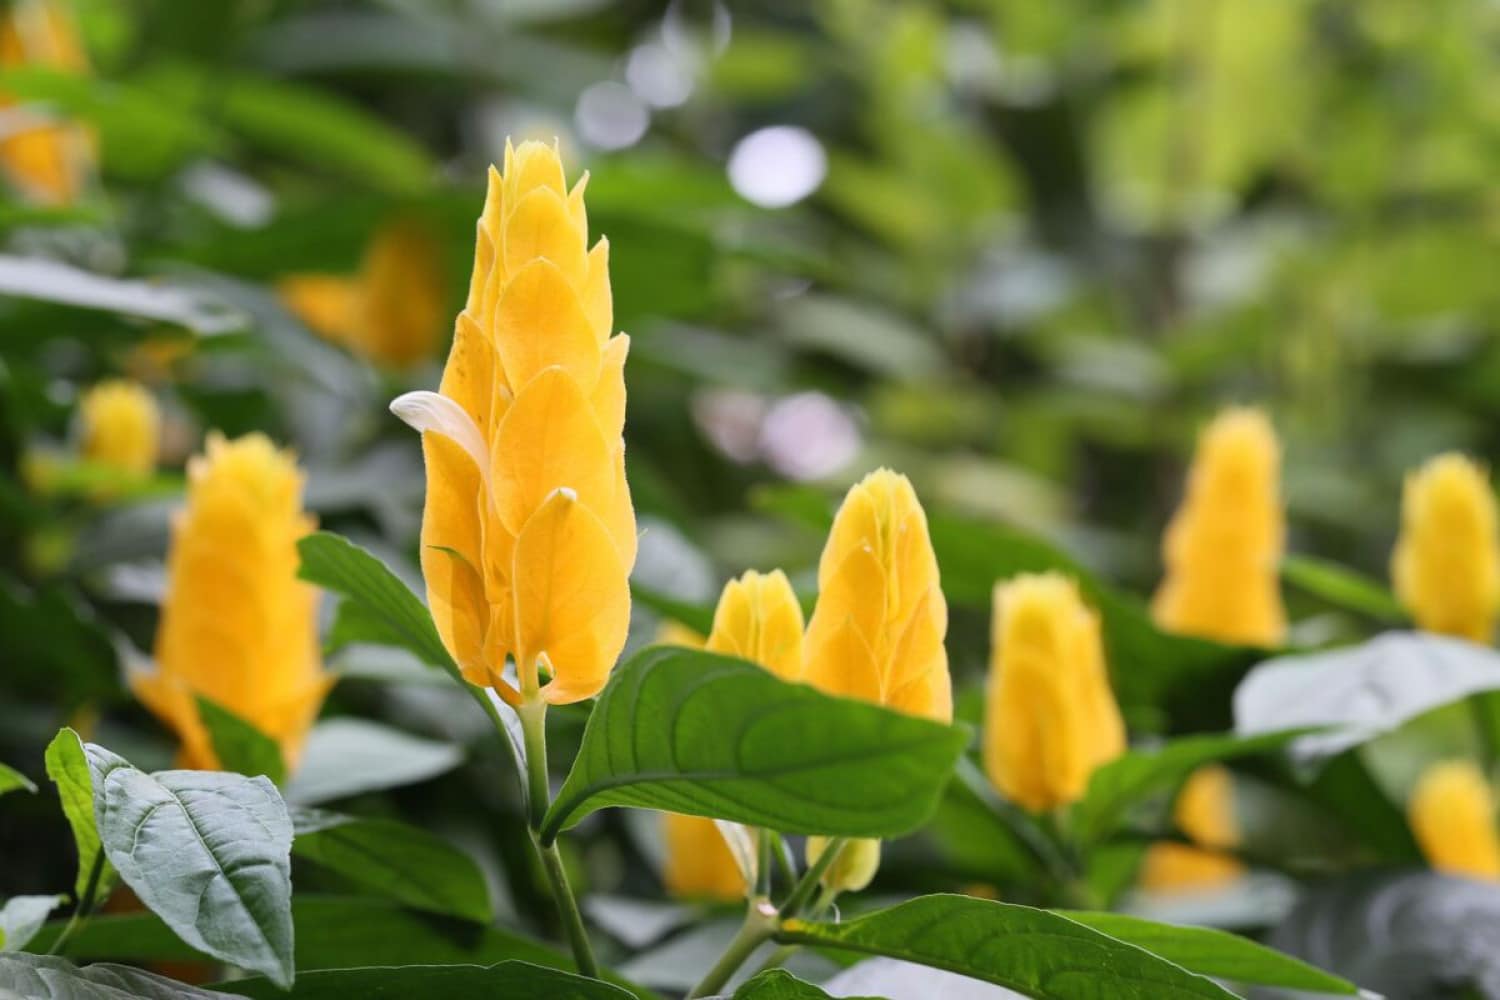  Nysgerrig skønhed: Plant gule rejer for en endnu mere fantastisk have